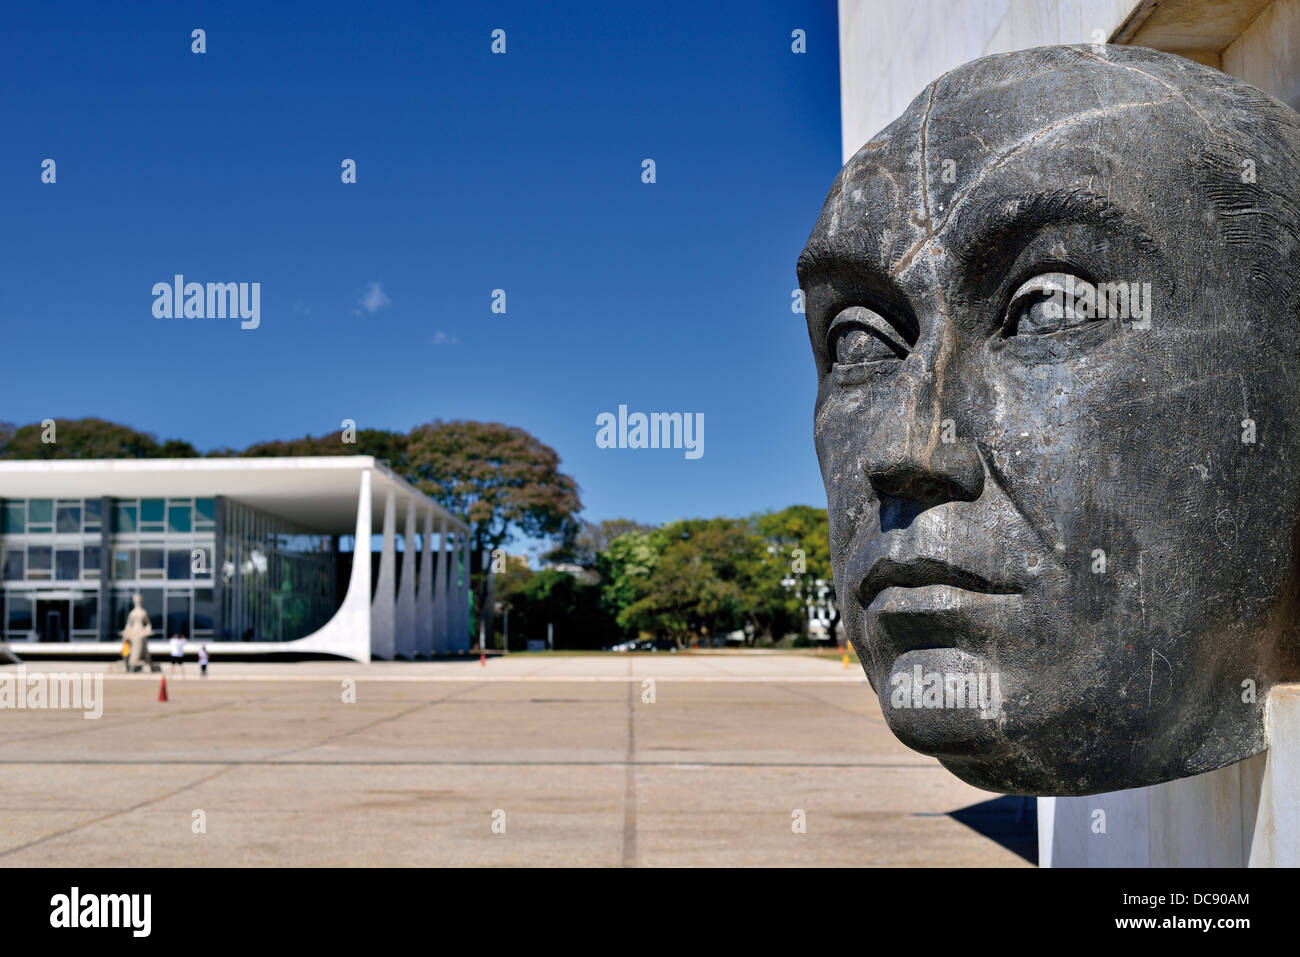 Brésil, Brasilia : buste en l'hommage de l'initiateur et fondateur de la capitale brésilienne Brasilia à la Praca dos Tres Poderes Square Banque D'Images